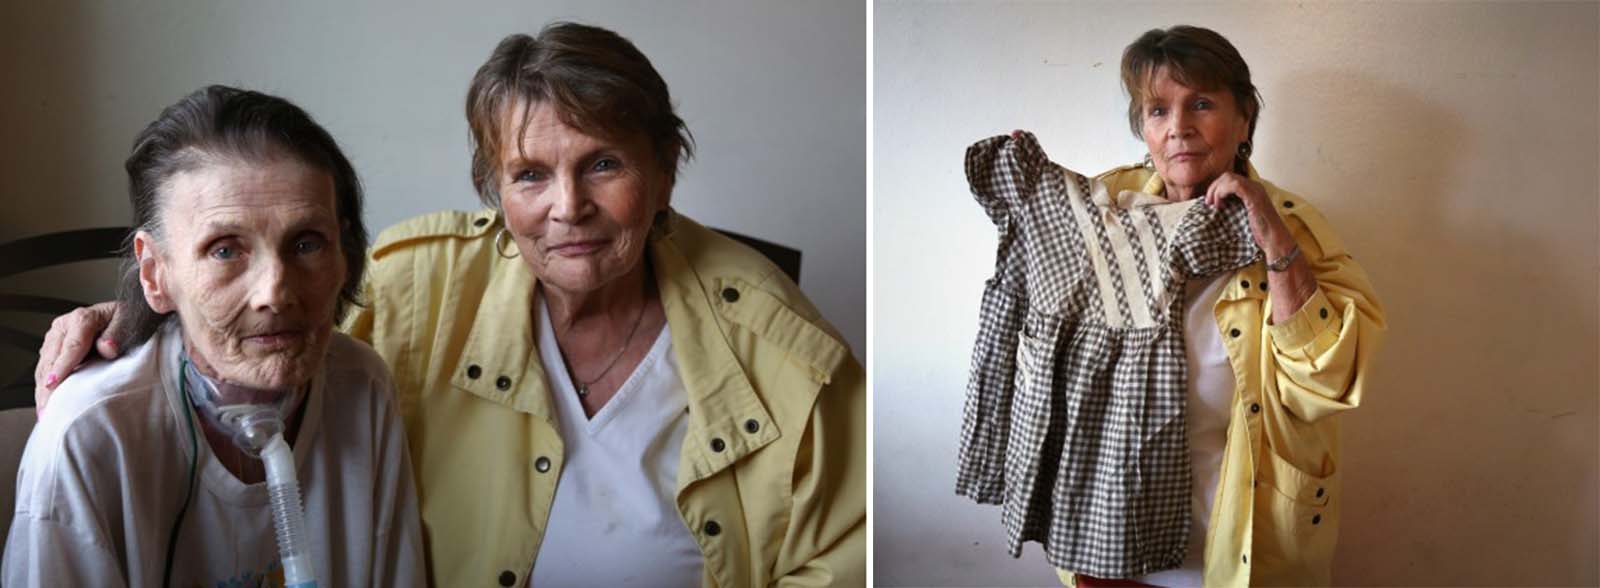 (Links) Sue Ellen und ihre Schwester RaeAnn Mills trafen sich im Haus von Chalufoux in Hammond wieder. (Rechts) RaeAnn Mills hält das Kleid, in dem sie als Kind verkauft wurde. Es ist der einzige physische Gegenstand, den sie aus der Zeit mit ihrer leiblichen Mutter hat. Fotos aus dem Jahr 2013.